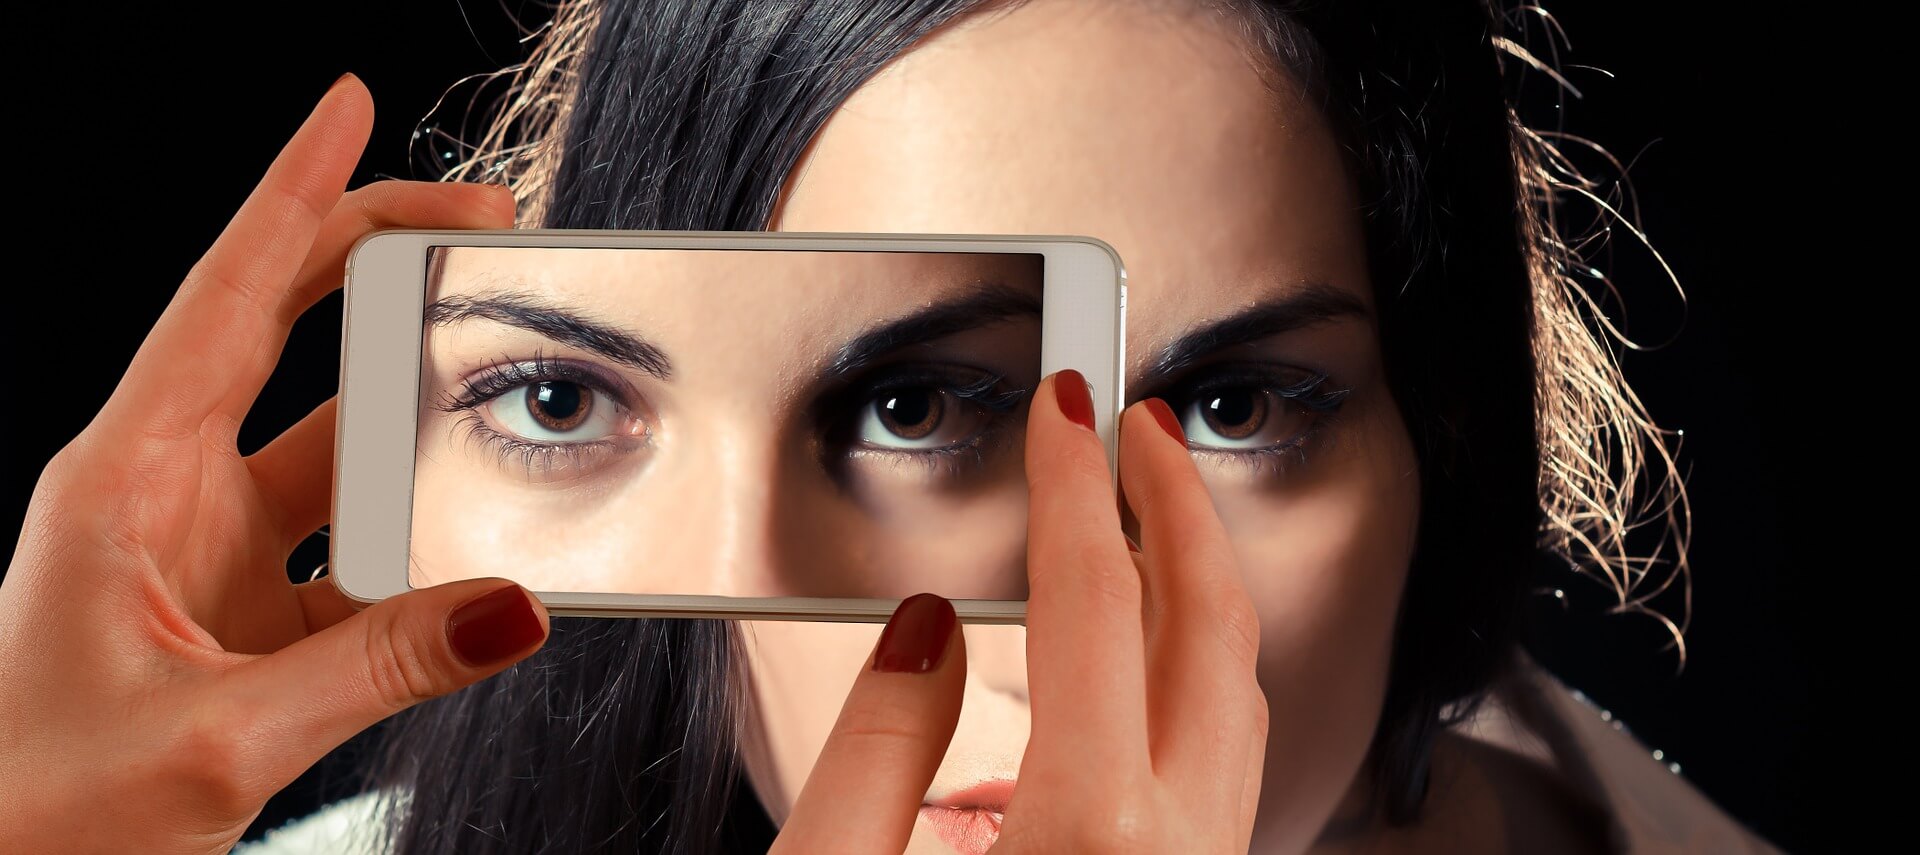 imagem sem autorização 1 - imagem de uma pessoa tirando uma foto com um celular do rosto de uma mulher